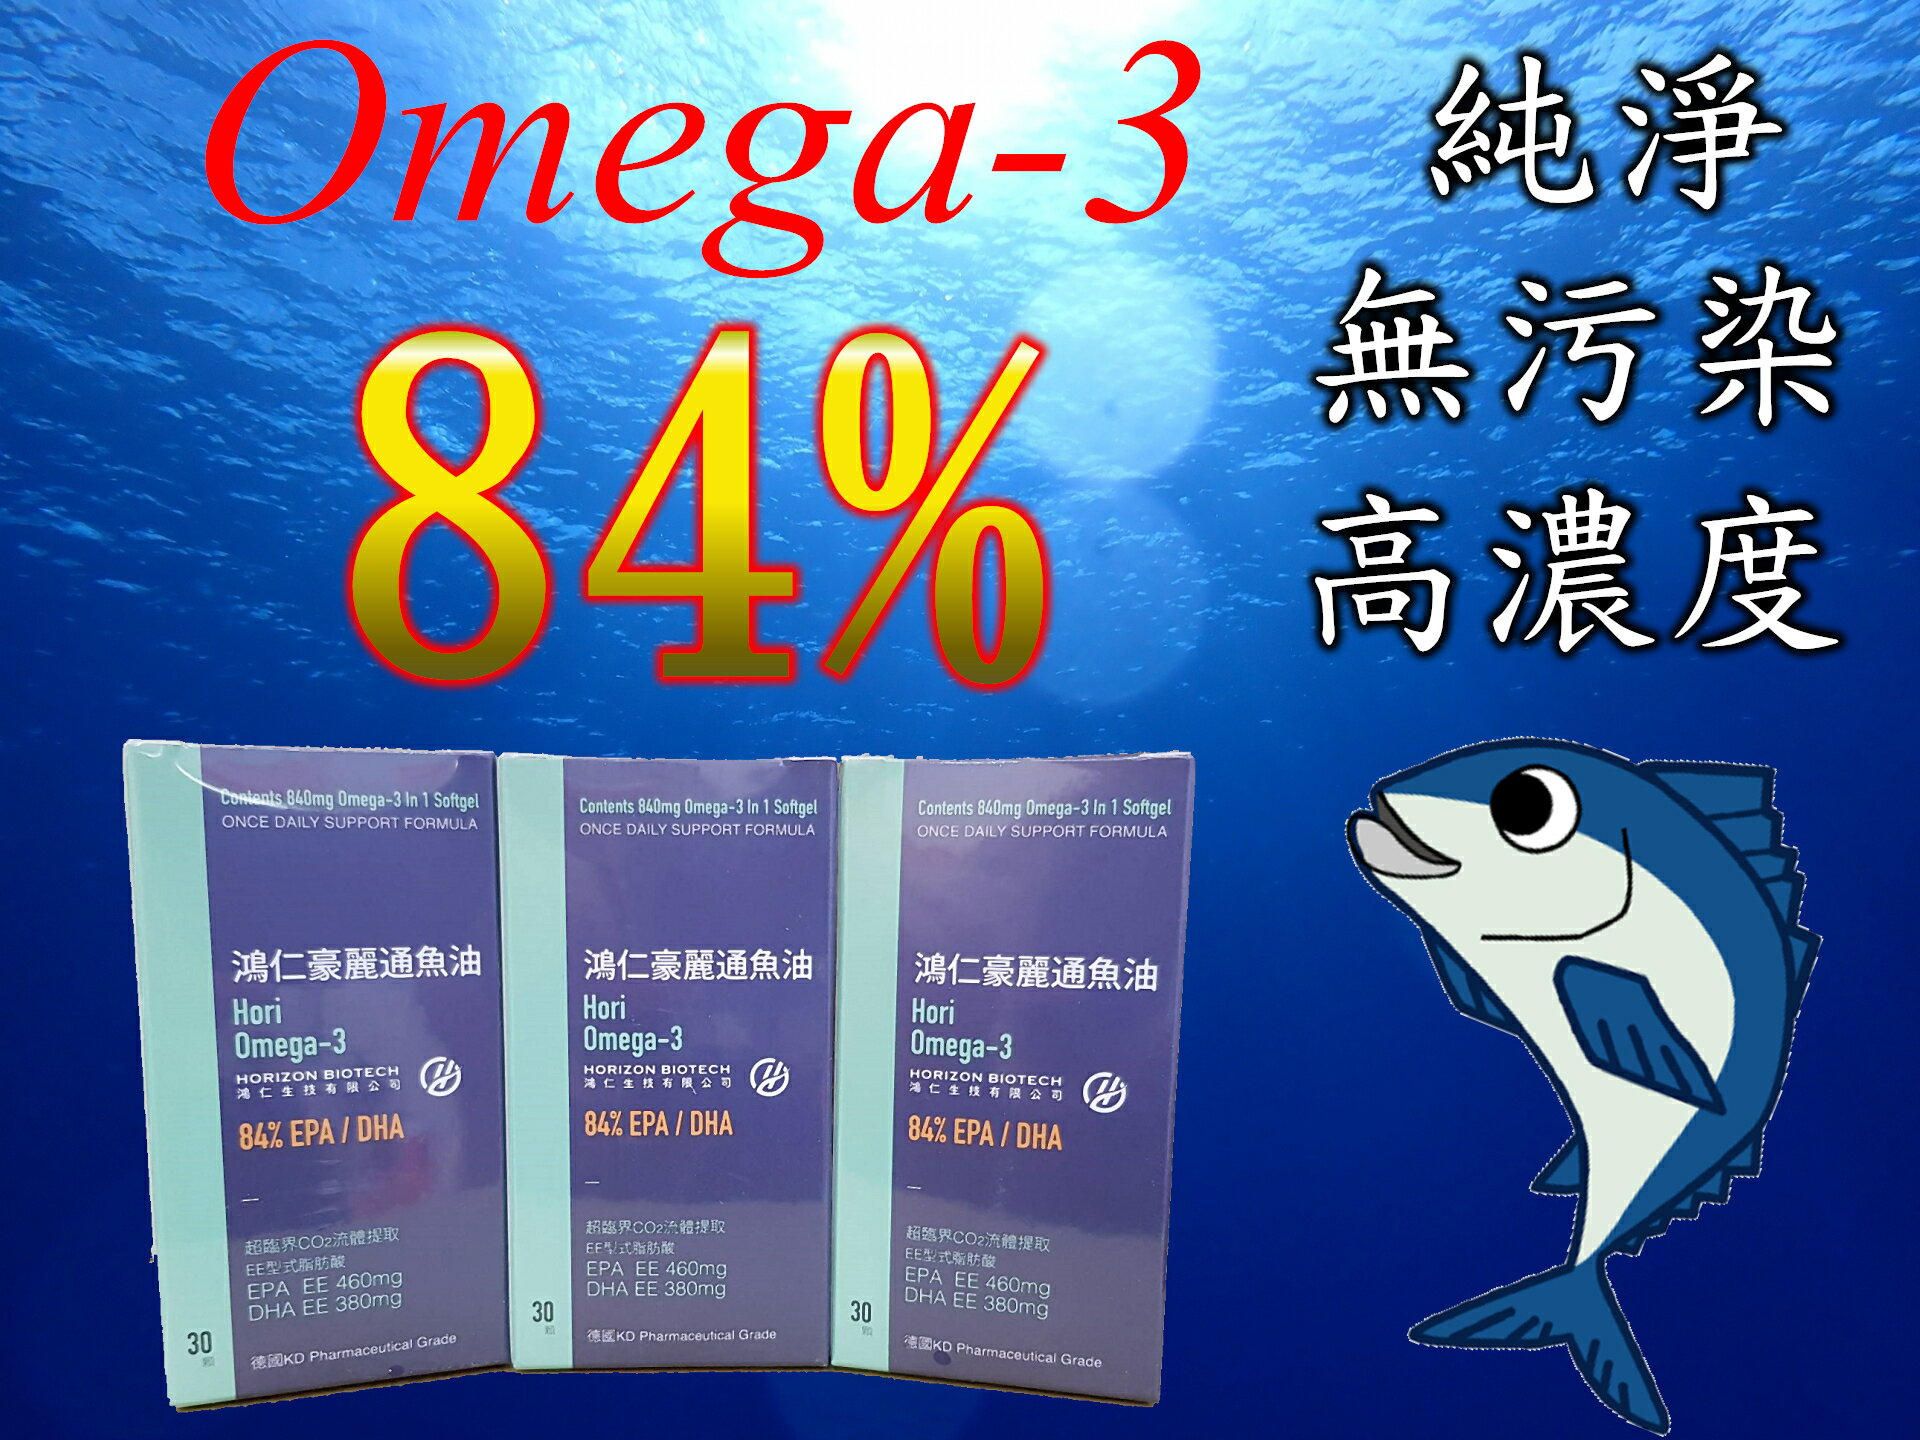 84% 德國頂級魚油 超高純度 鴻樂通魚油(鴻仁豪麗通魚油) 超完美黃金比例 高倍濃縮提取 84%高純正魚油 EPA 46%+DHA 38% 不含沙拉油